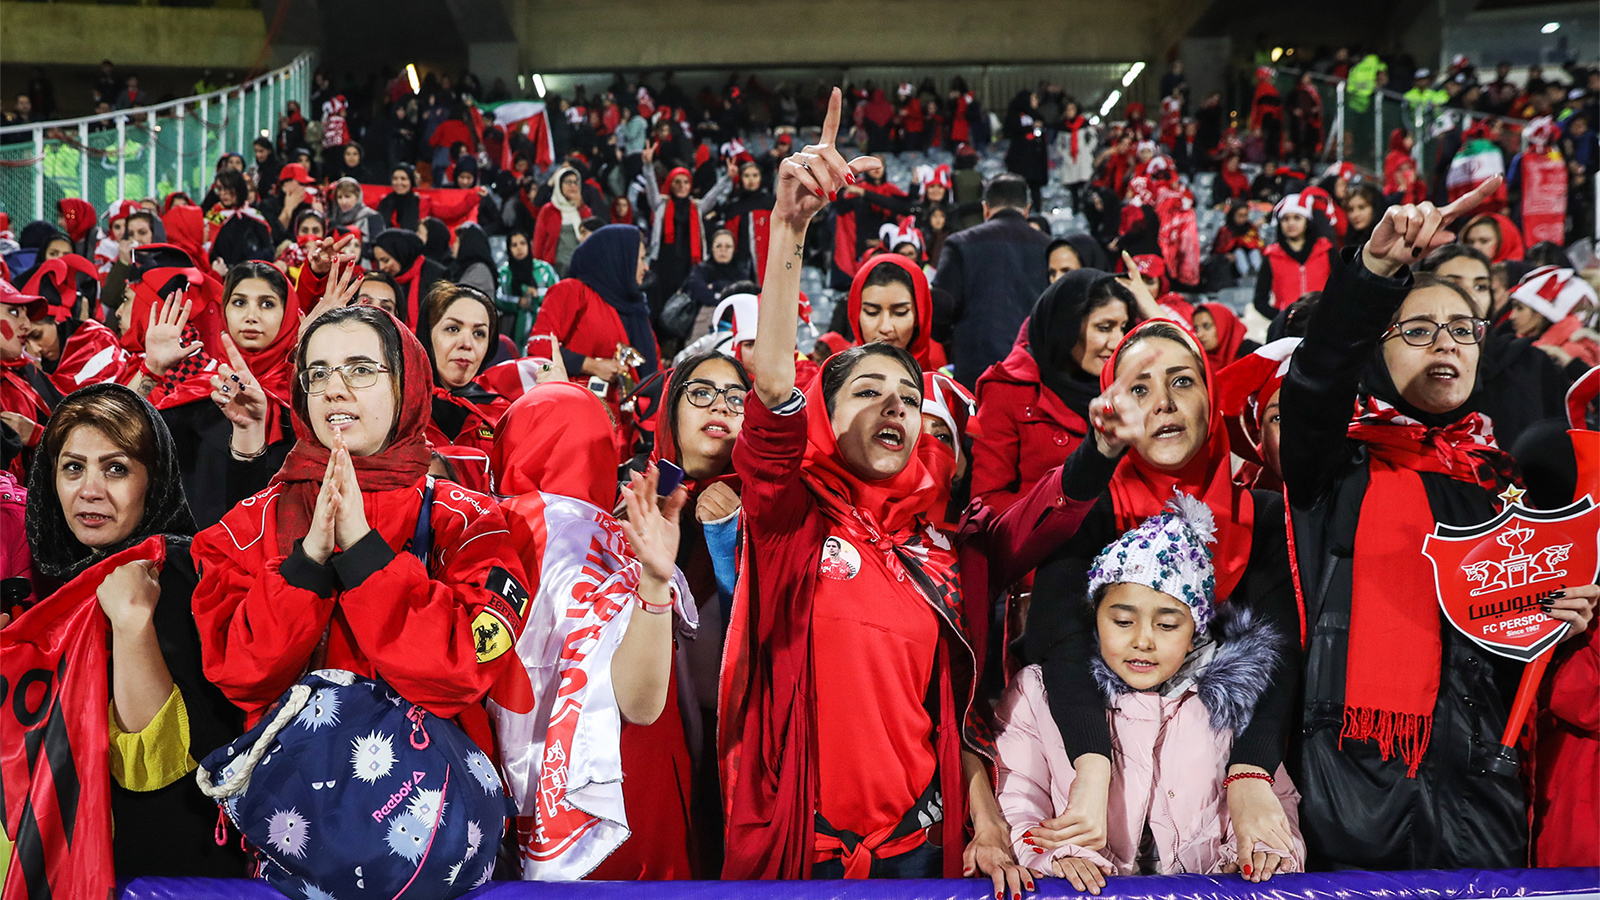 ‪المدرج المخصص للنساء في ملعب آزادي لا يستوعب أكثر من 850 متفرجا حسب السلطات‬  (الجزيرة)